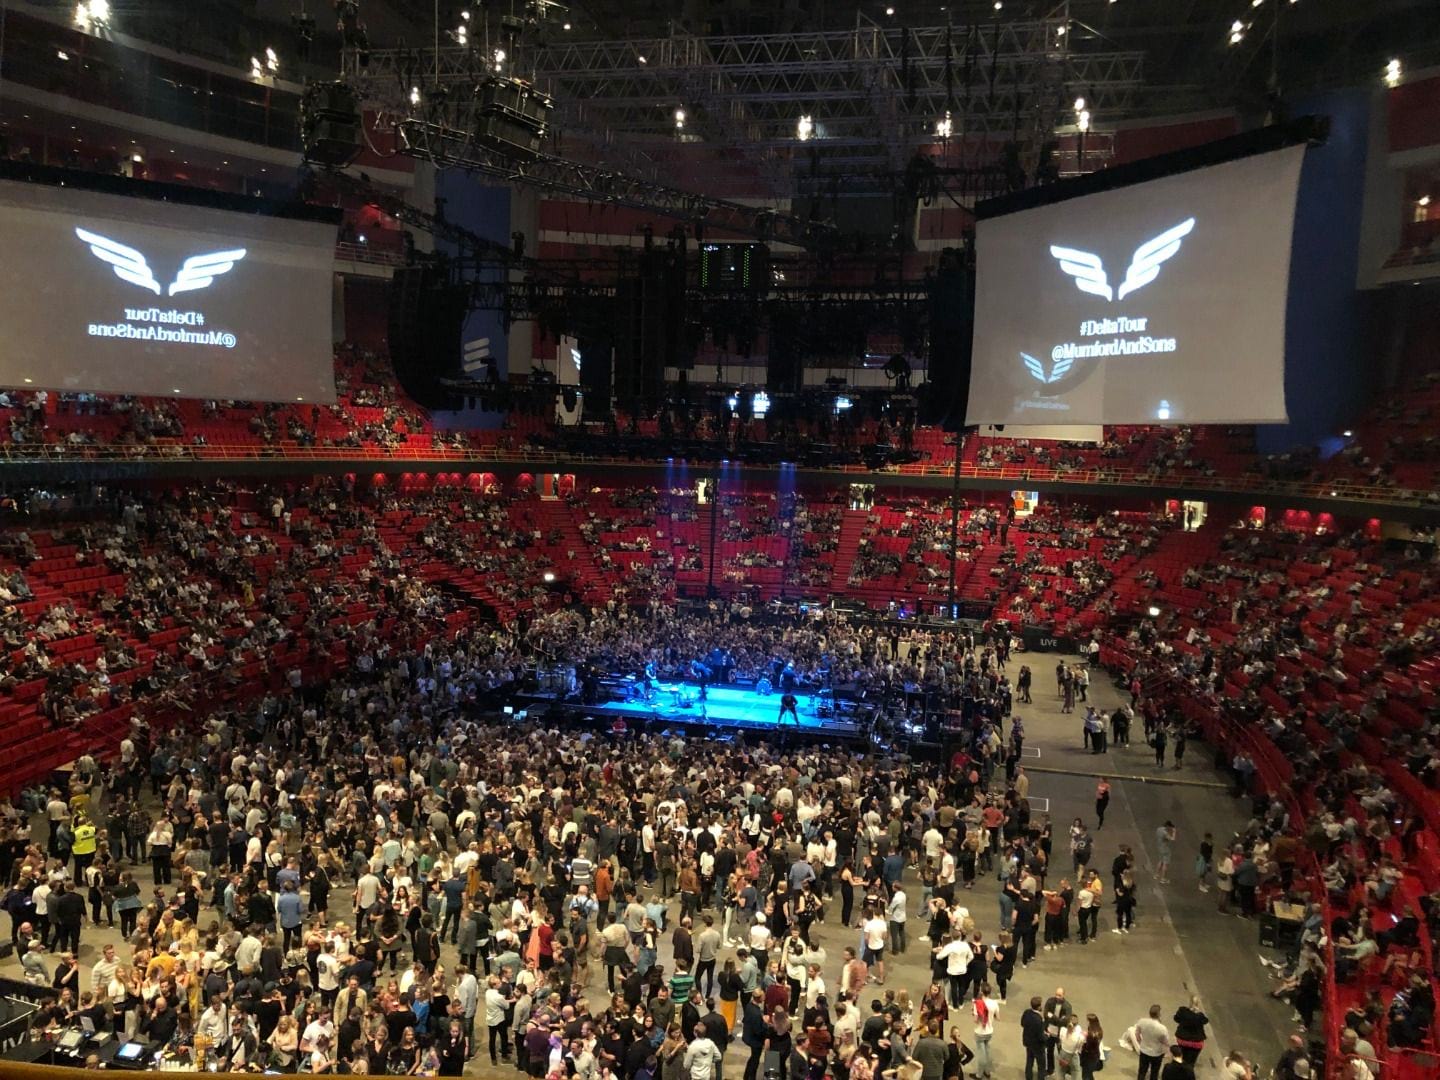 Innan konsert, scenen i mitten.  – Bild från Avicii Arena av Ida B. (2019-08-29)